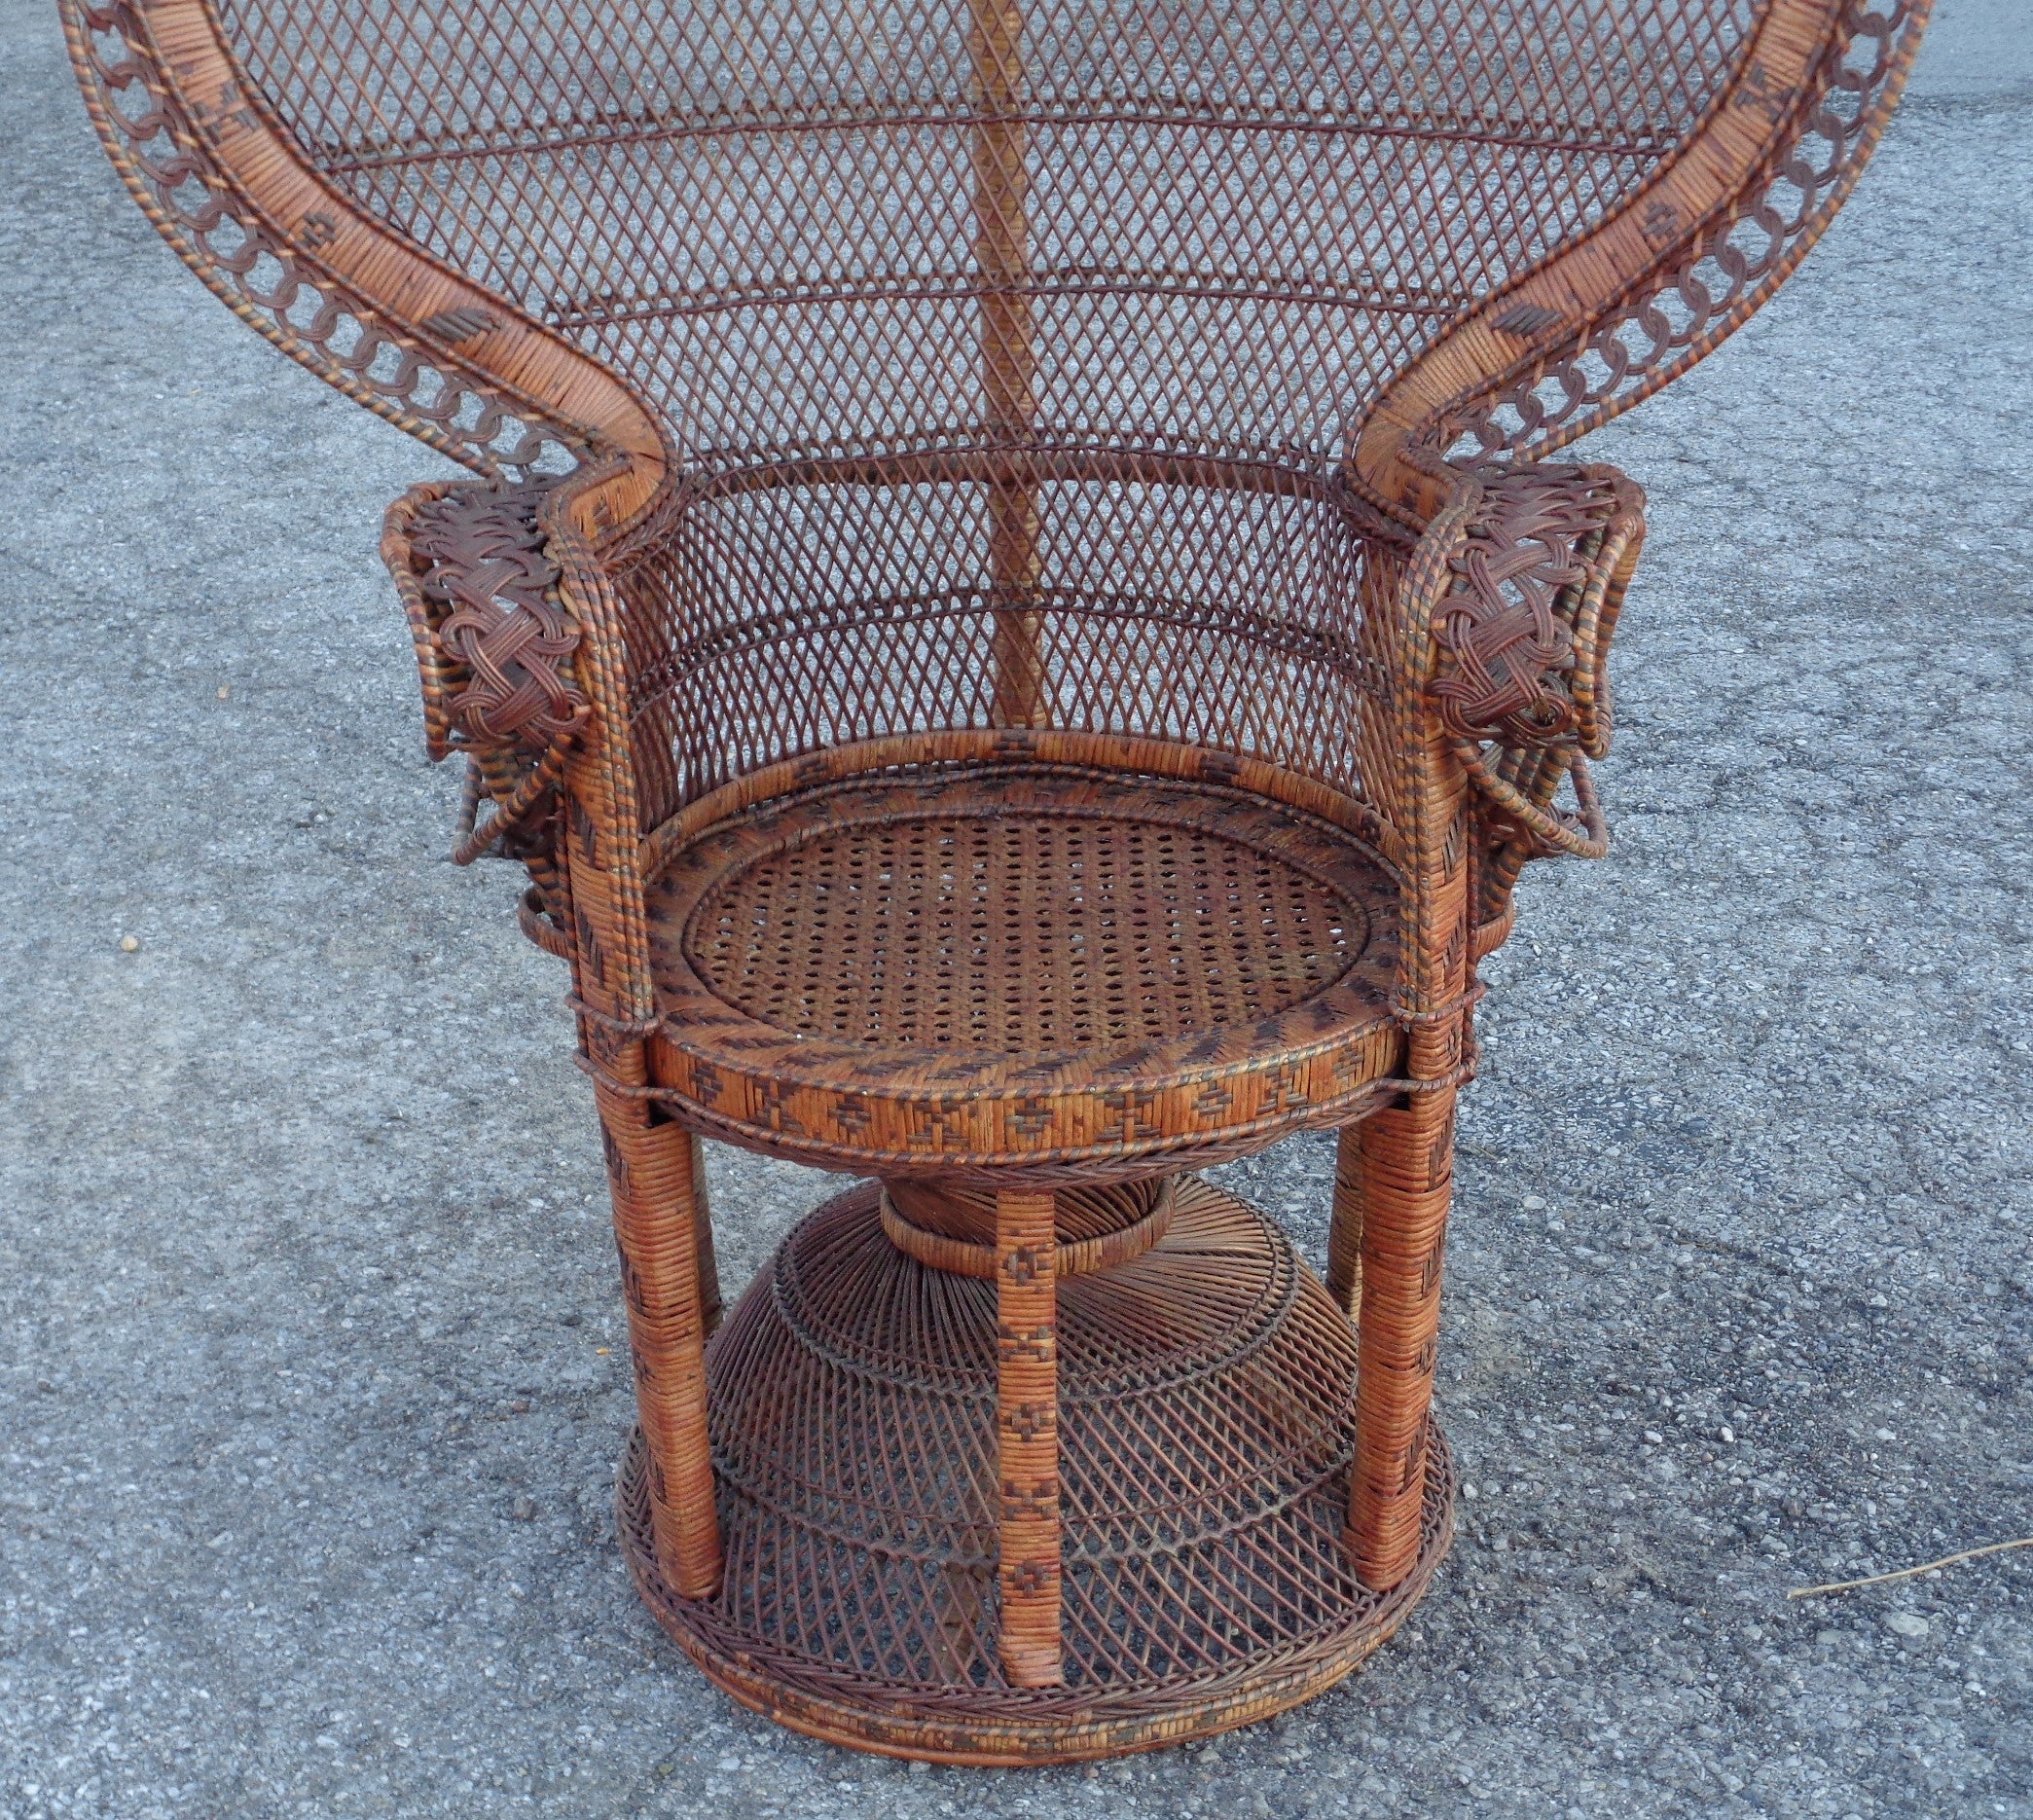 Finely woven wicker rattan large fan back peacock chair 